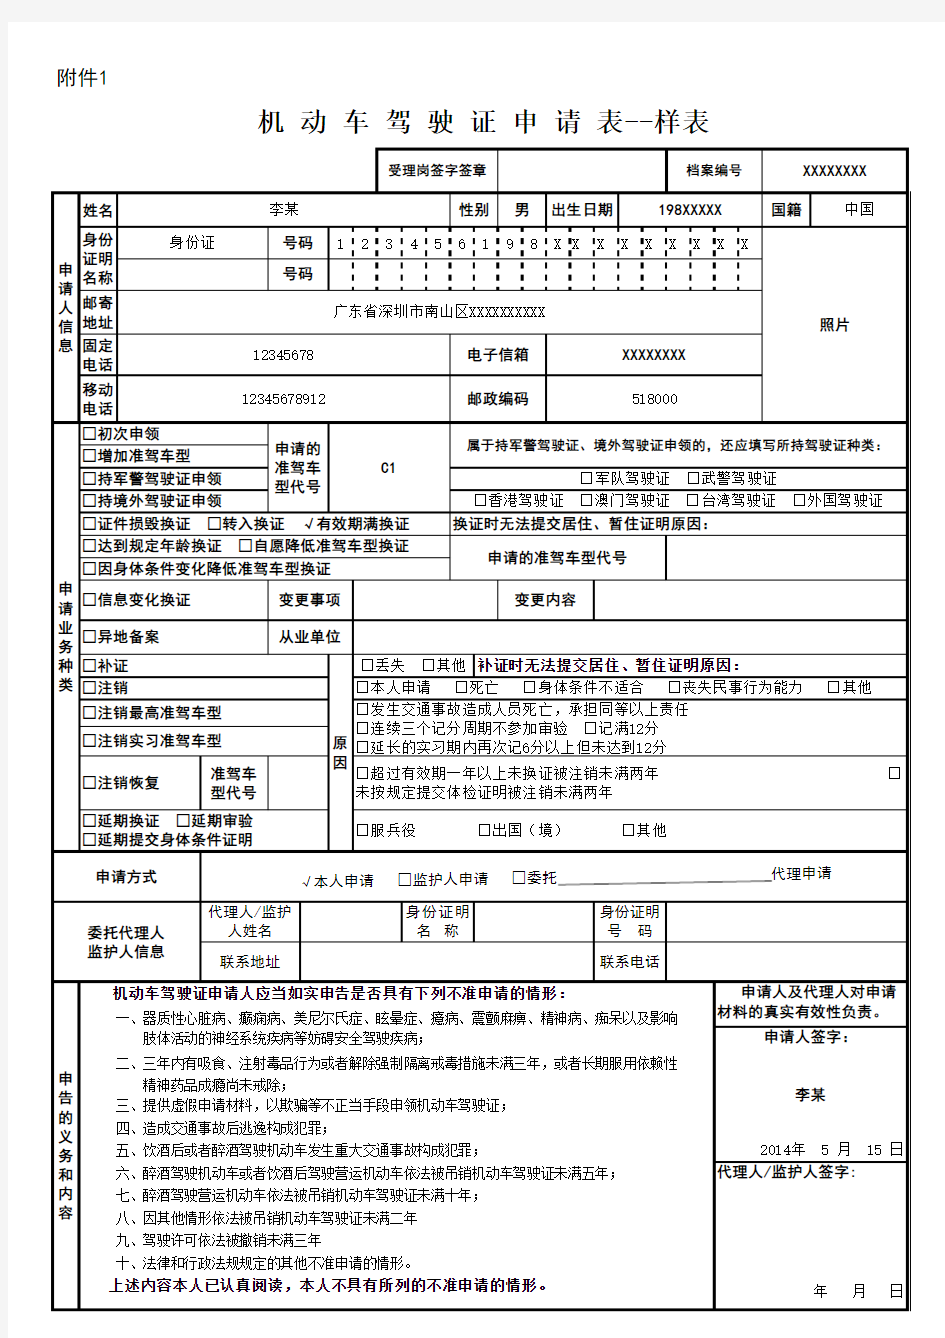 深圳市机动车驾驶证申请表--样表